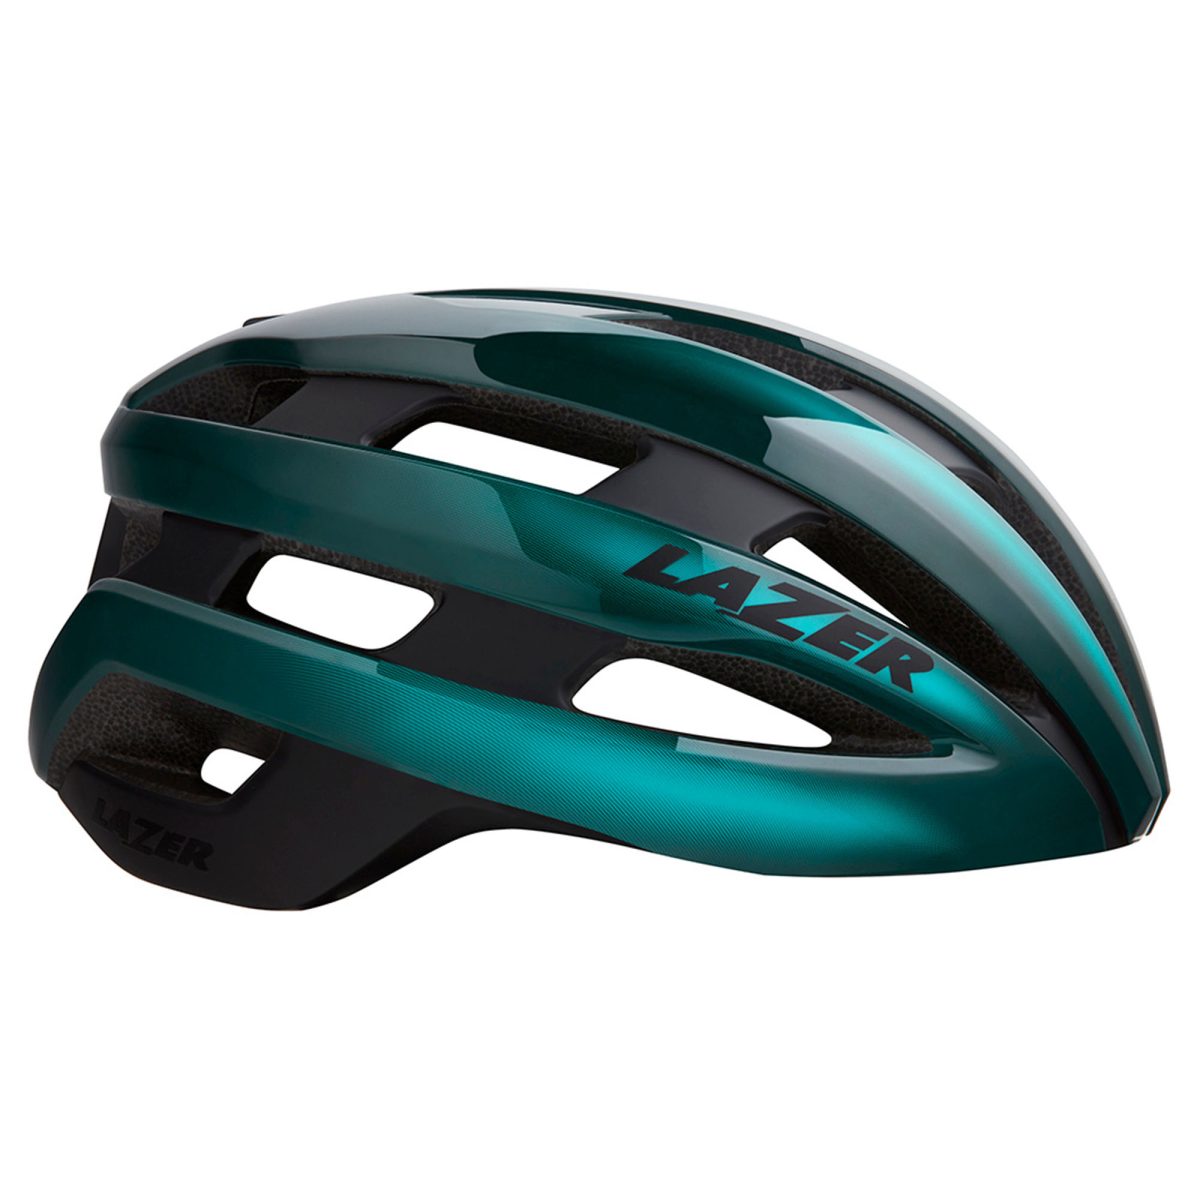 Lazer Sphere MIPS Road Bike Helmet